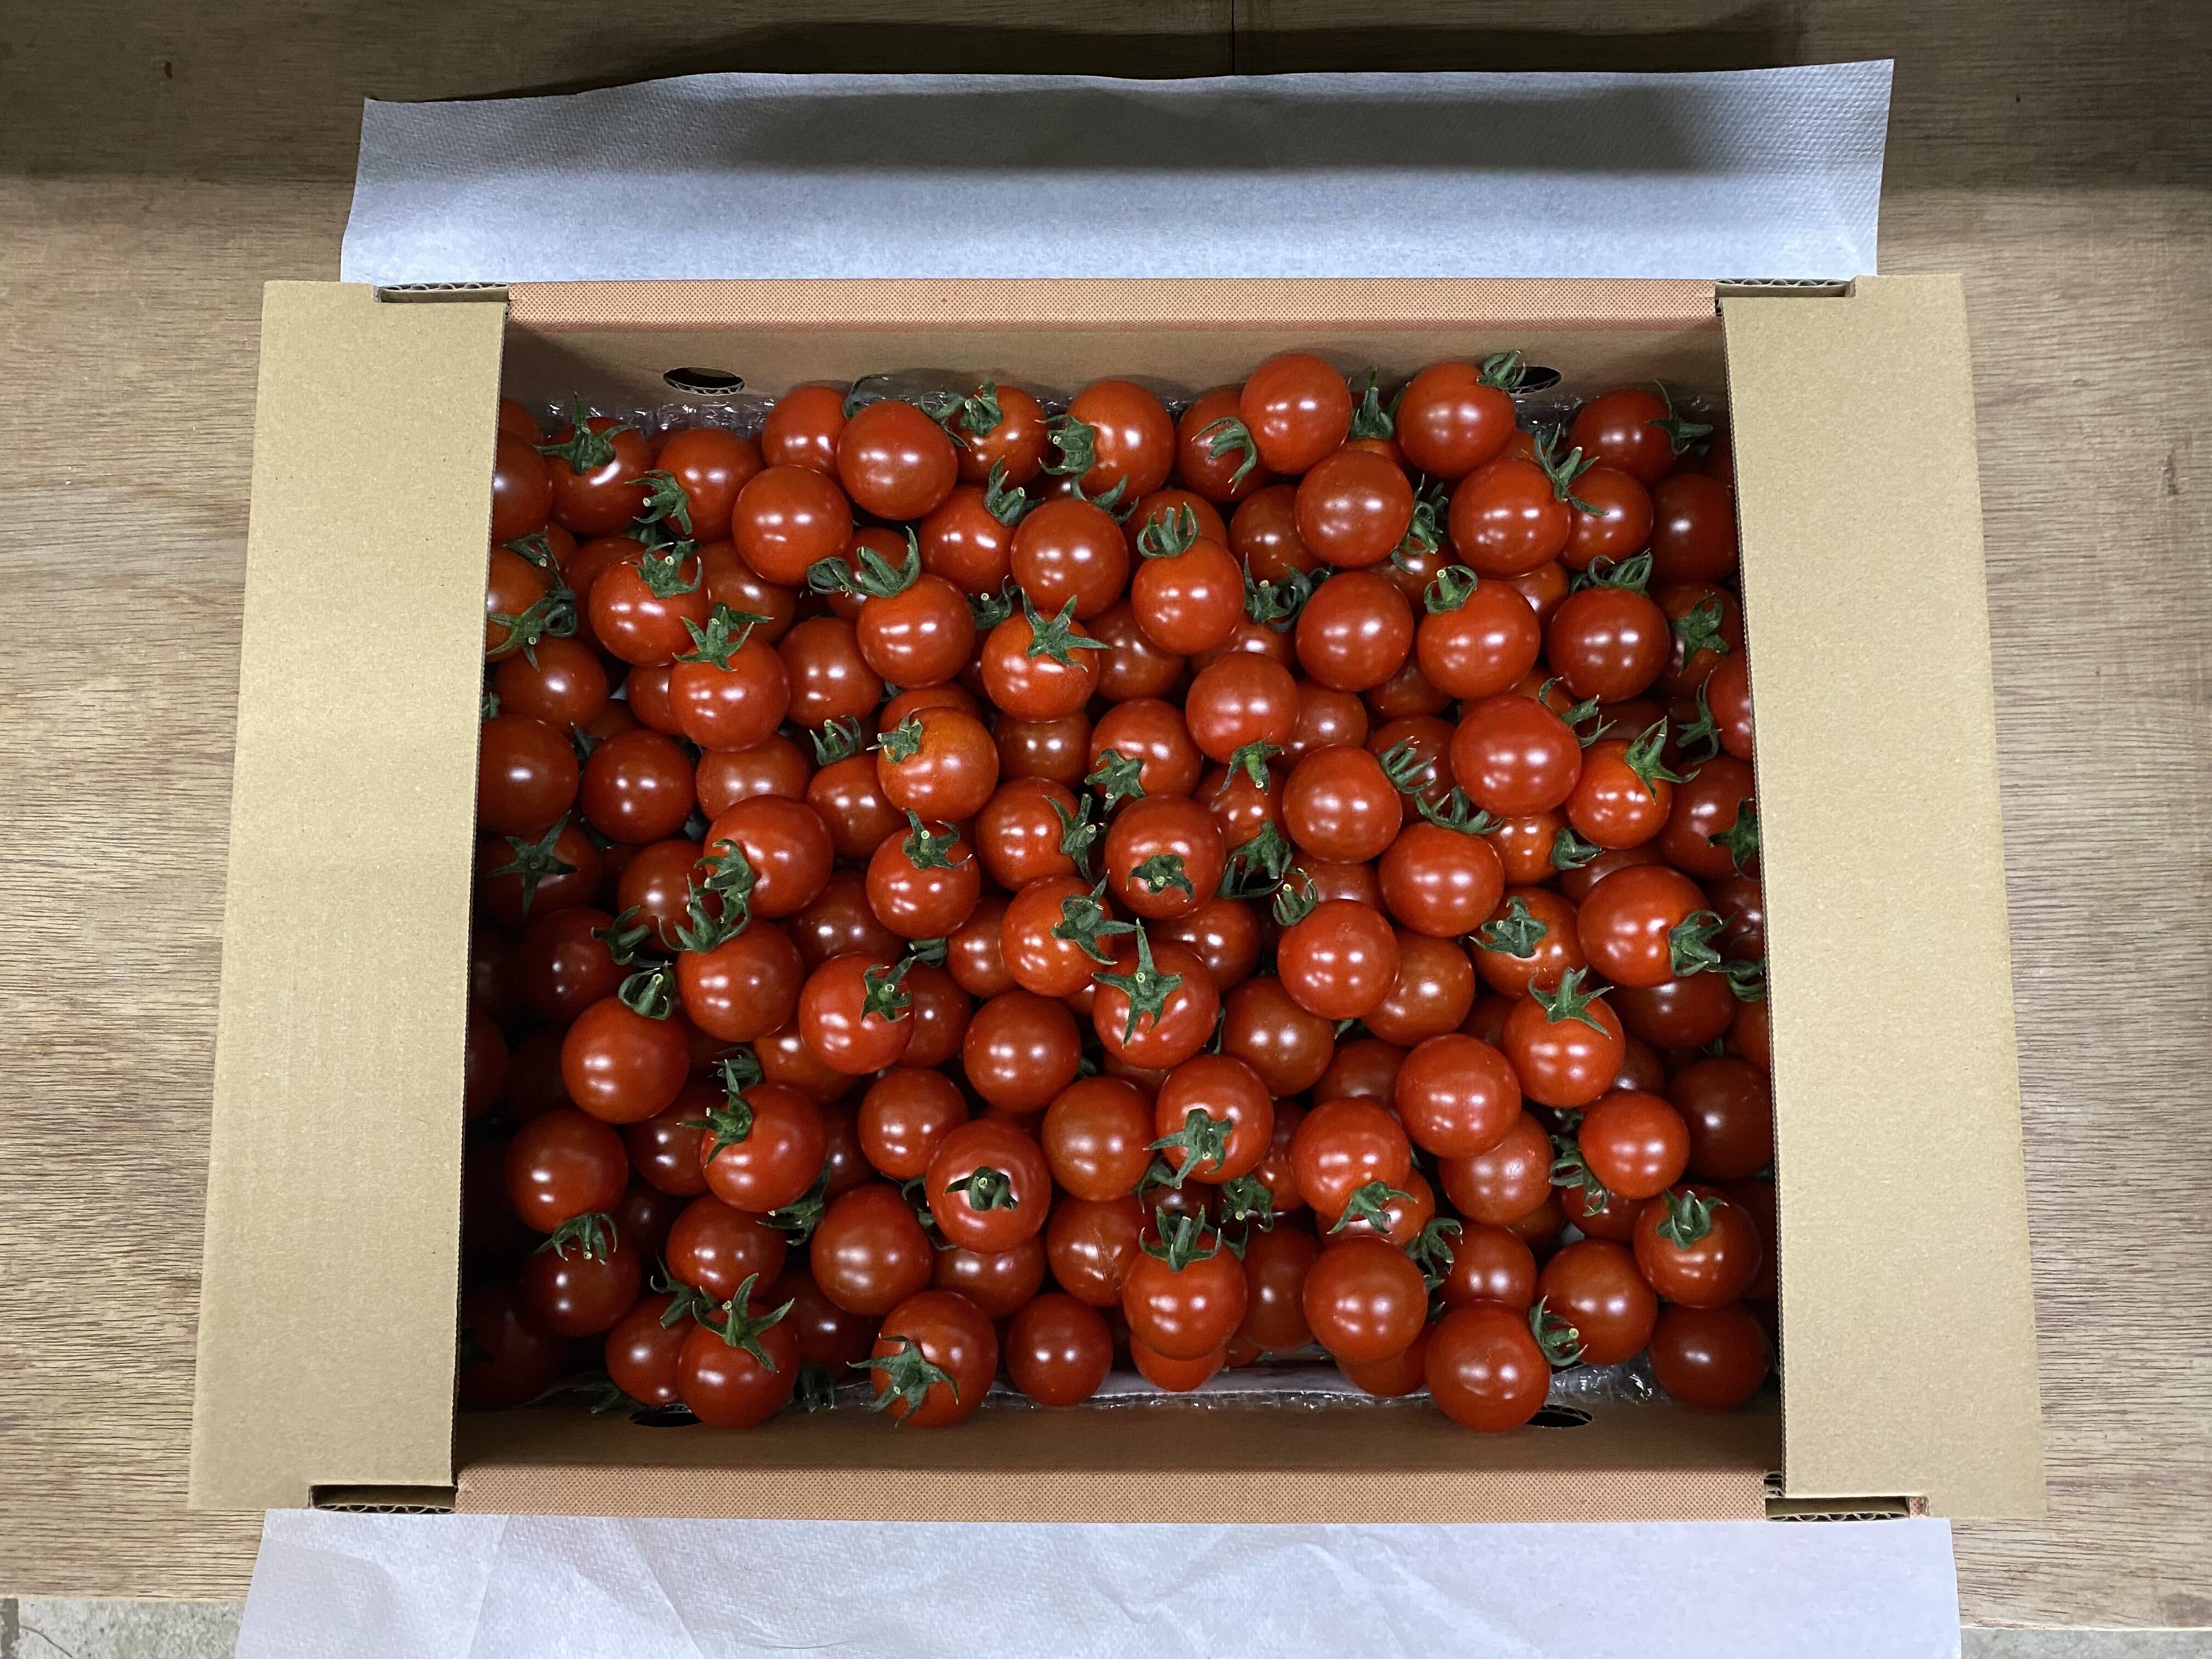 サトキキ] 様 専用です。アンジエレミニトマト 箱込み3キロ入り×2箱 - 野菜